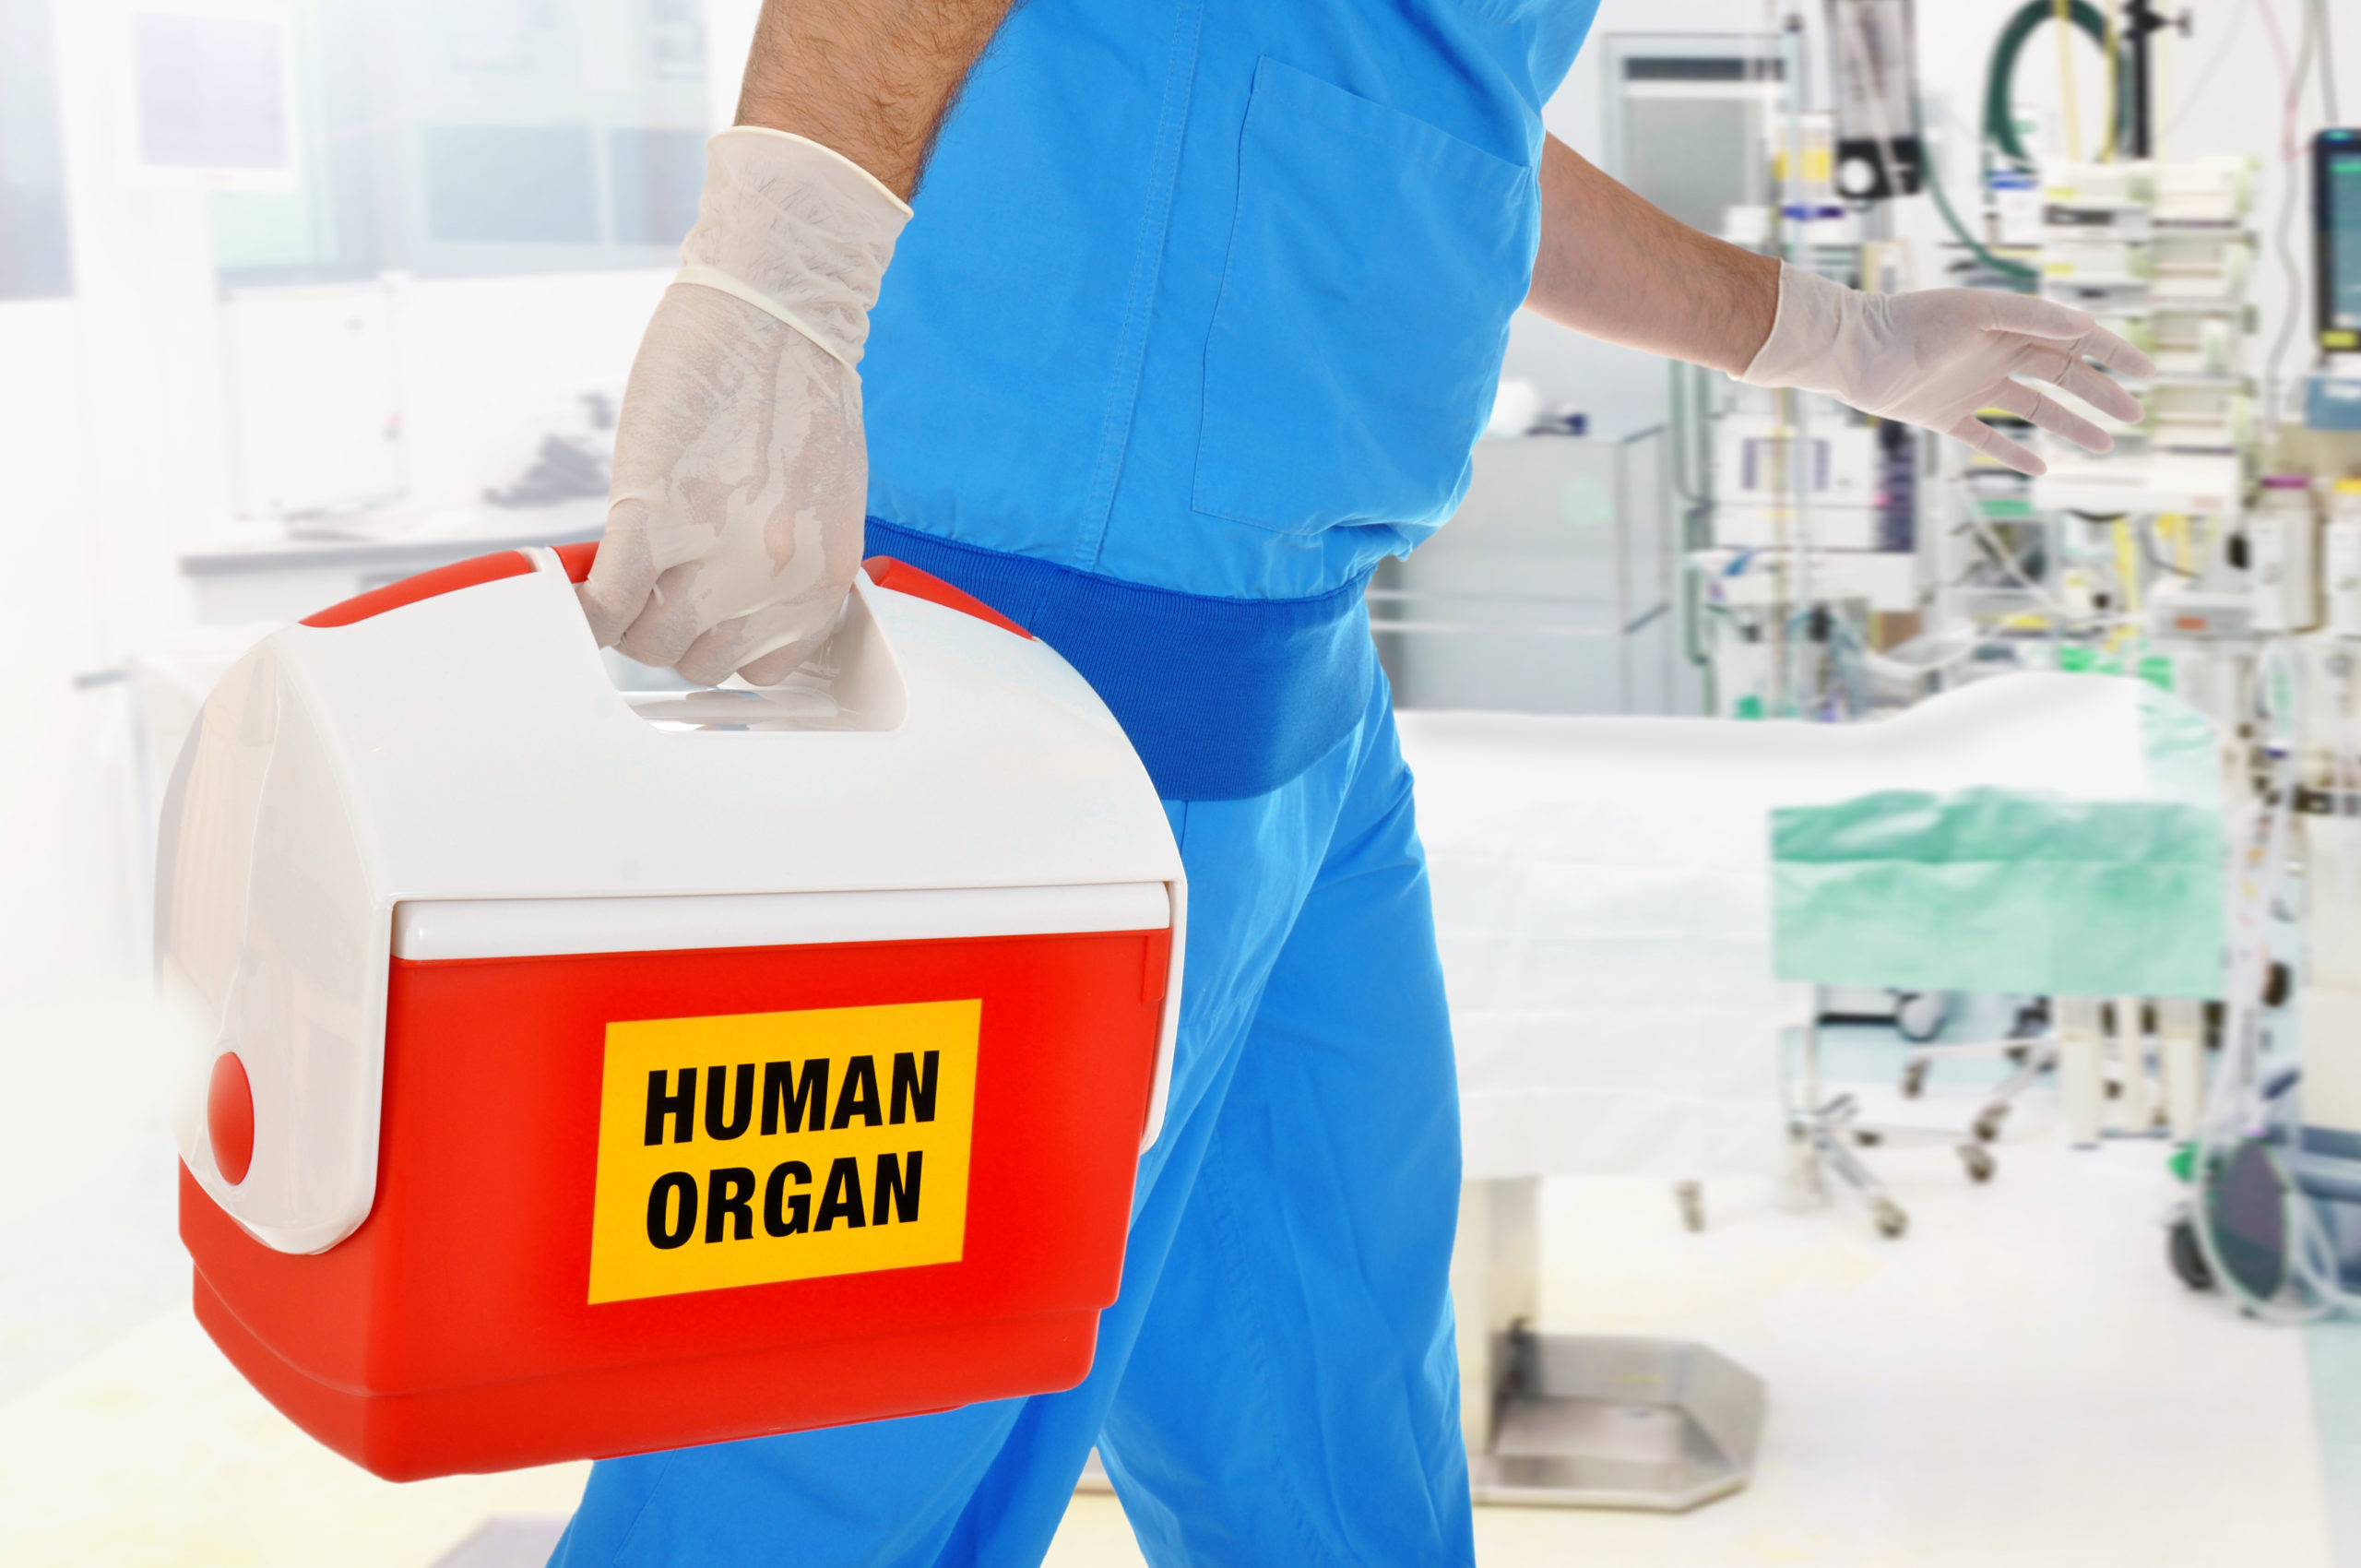 Arzt Bringt Organspende In OP Für Organtransplantation